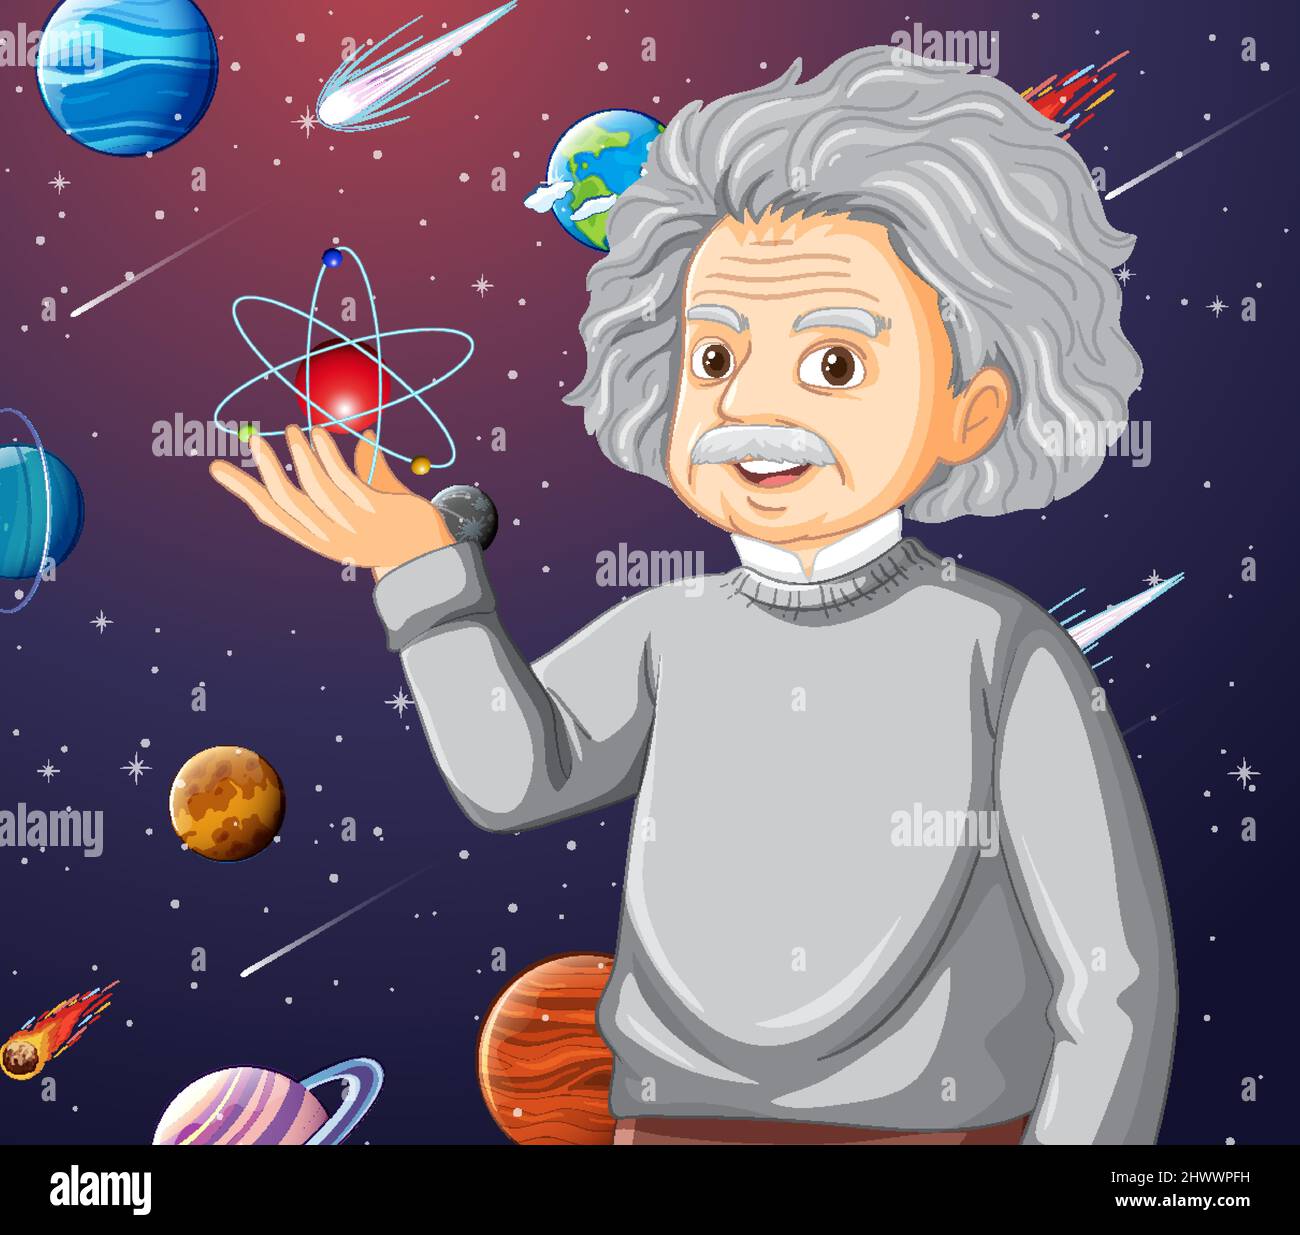 Portrait of Albert Einstein in cartoon style illustration Stock Vector  Image & Art - Alamy